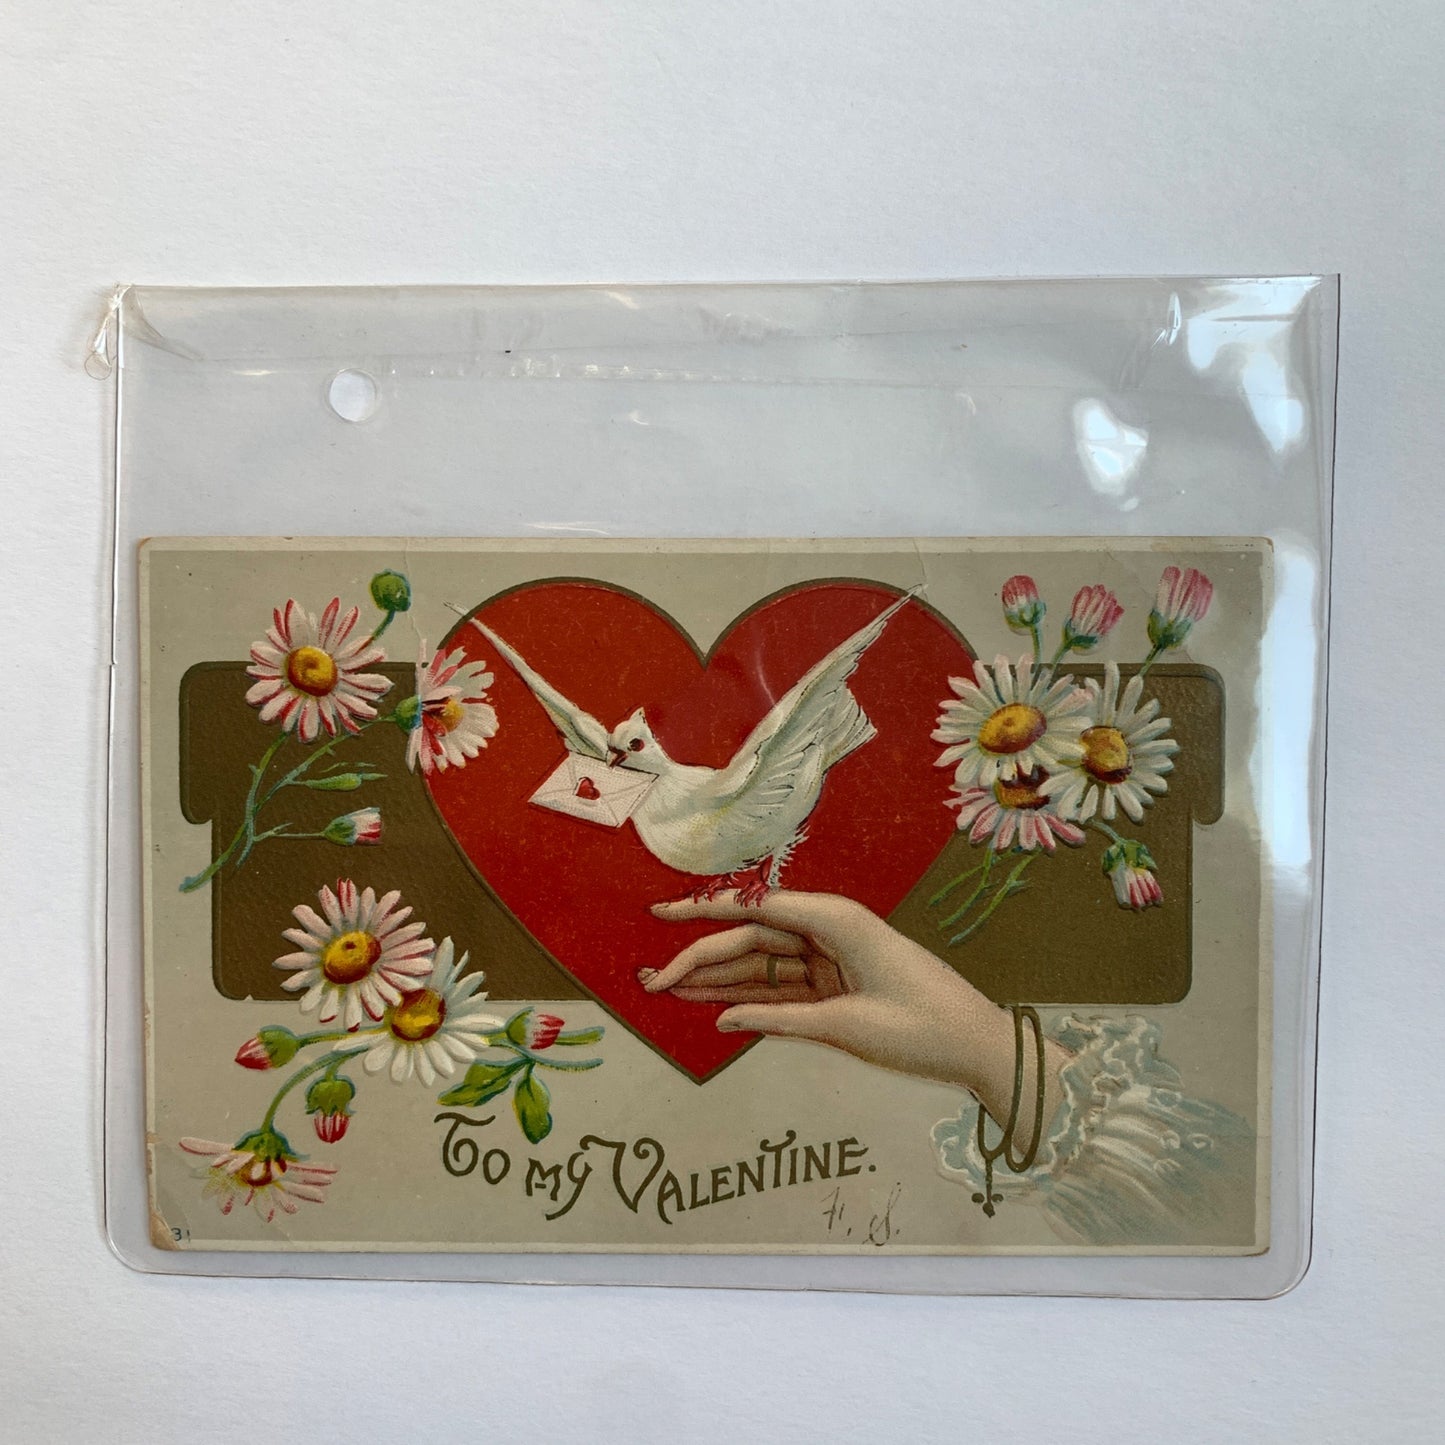 1911 Antique Valentine's Day Postcard Stamped Dated To My Valentine